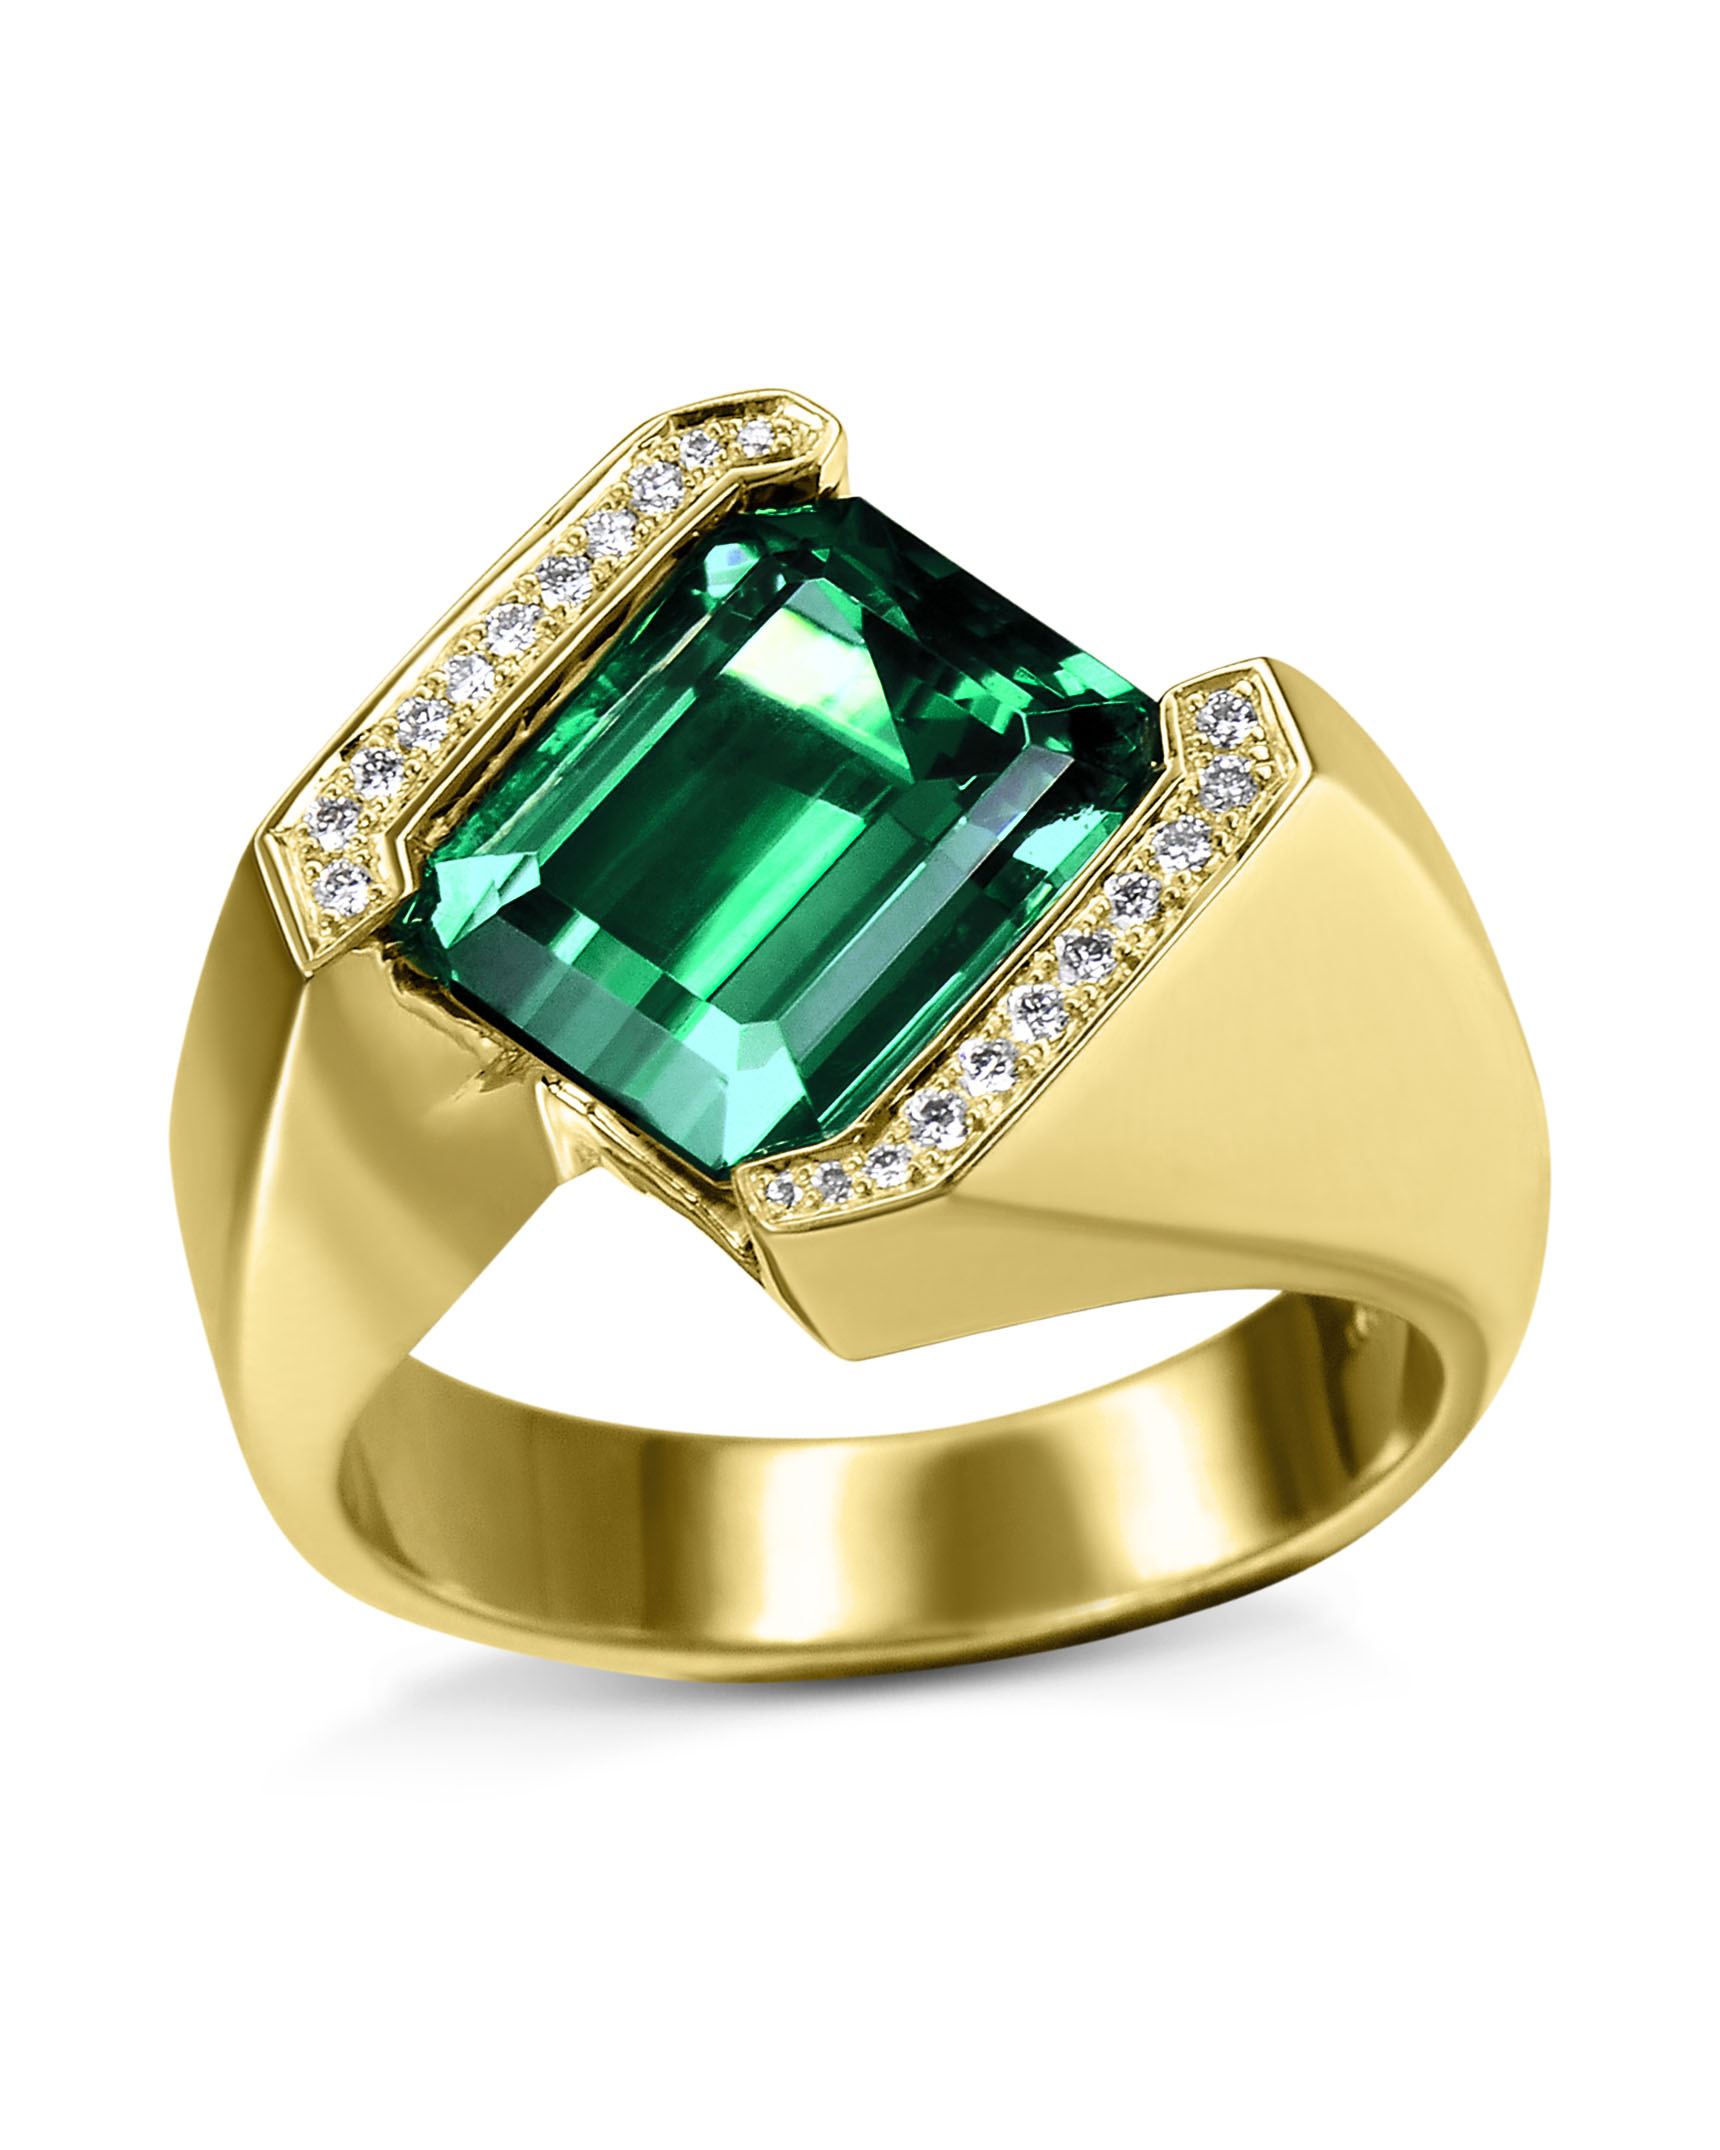 Green Tourmaline and Diamond Ring - Turgeon Raine